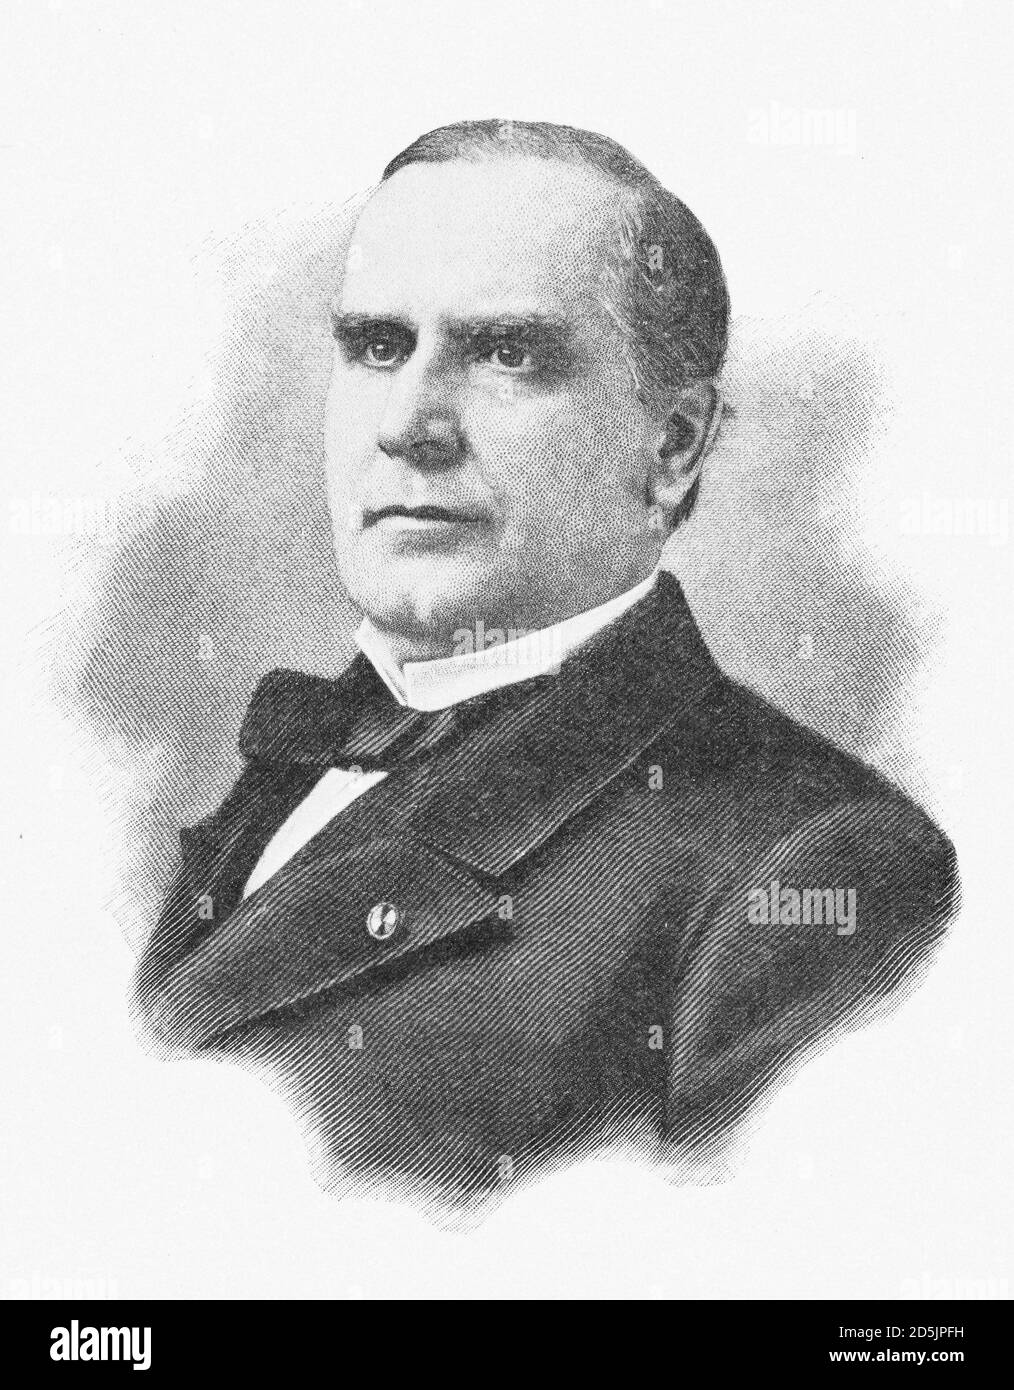 Porträt von Präsident William McKinley. William McKinley (1843 – 1901) war von 1897 bis zu seiner Ermordung der 25. Präsident der Vereinigten Staaten Stockfoto